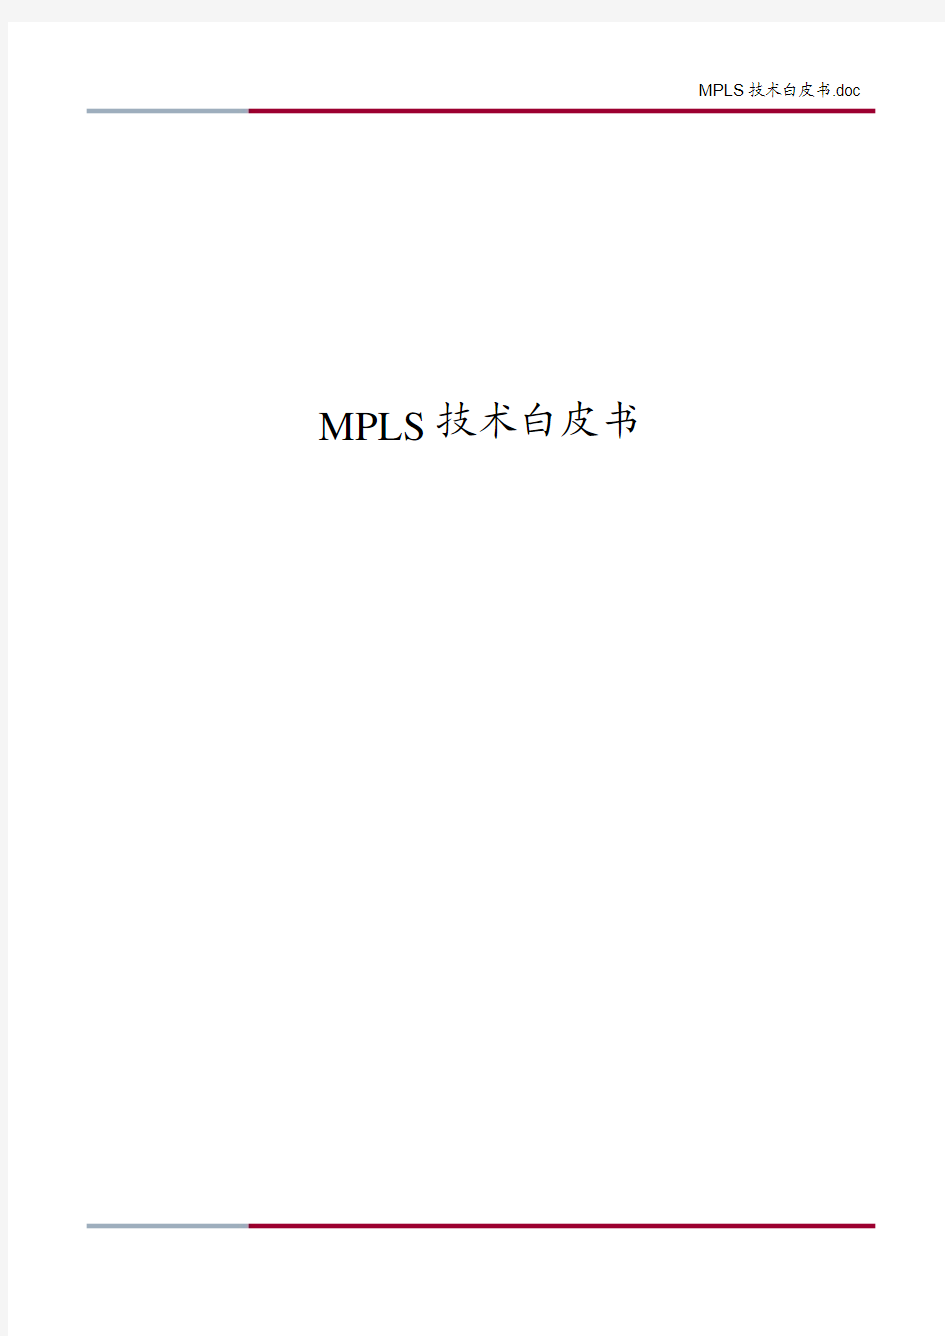 MPLS技术白皮书